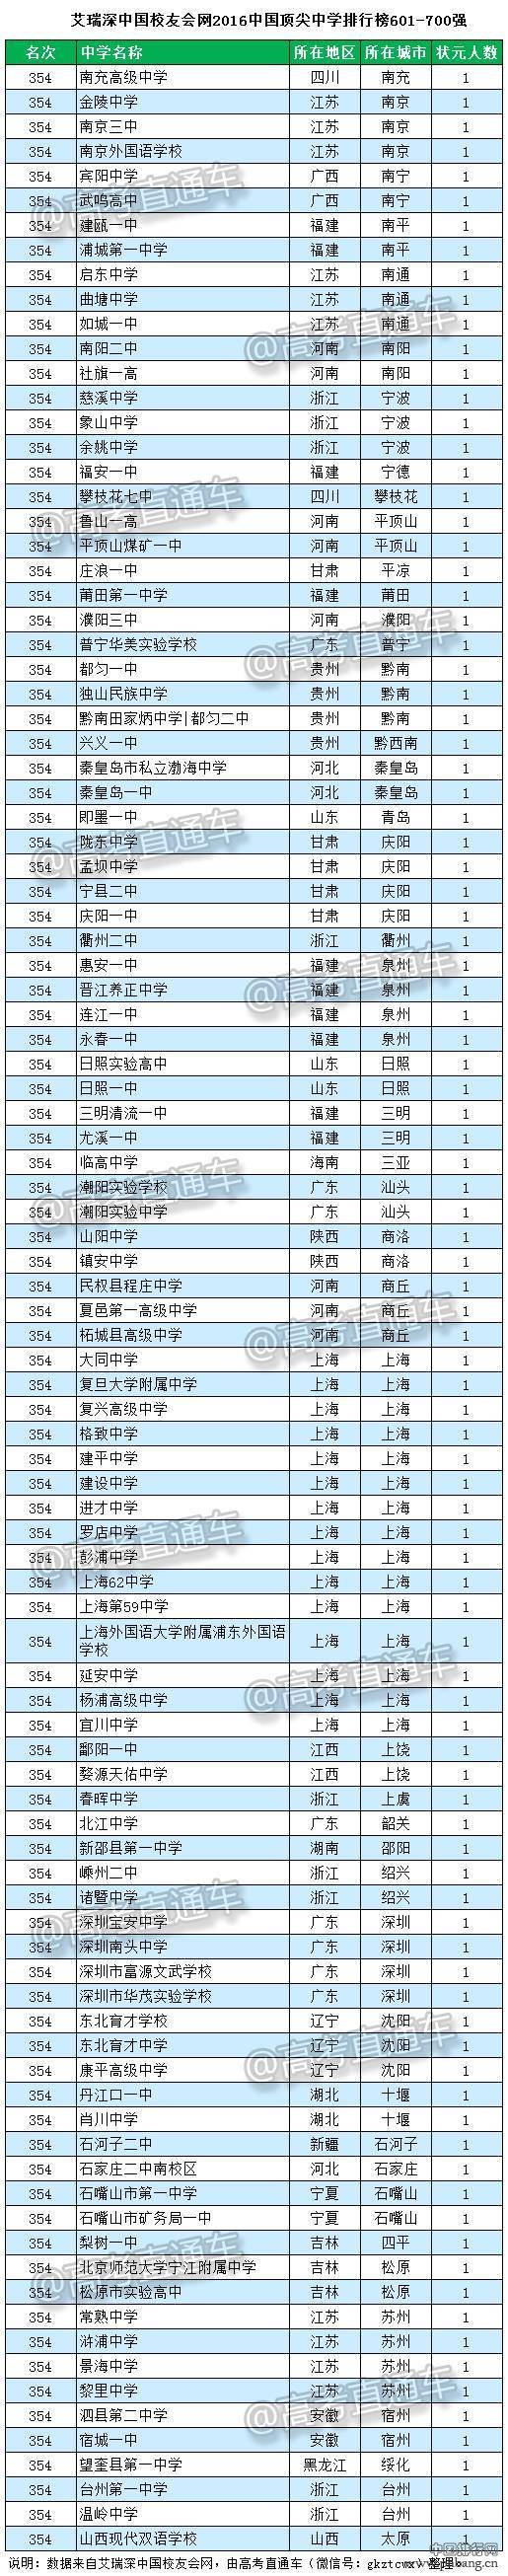 2016中国顶尖中学排行榜800强全名单